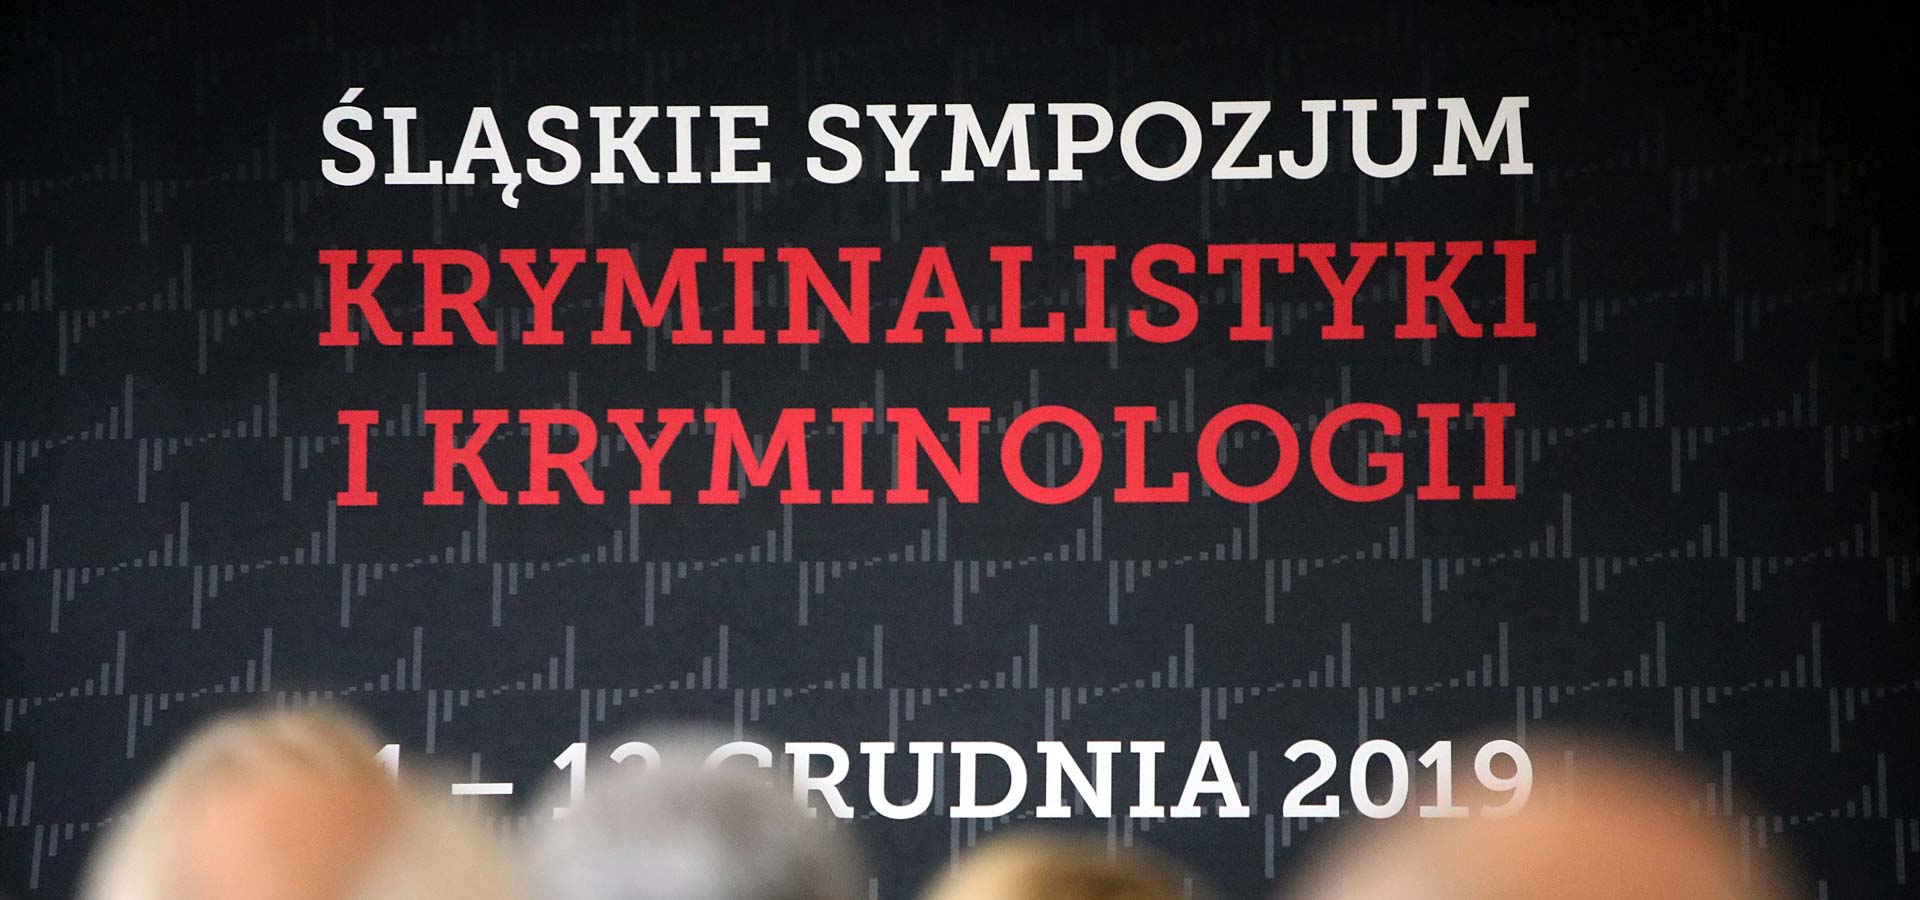 Zdjęcie ilustrujące Śląskie Sympozjum Kryminalistyki i Kryminologii